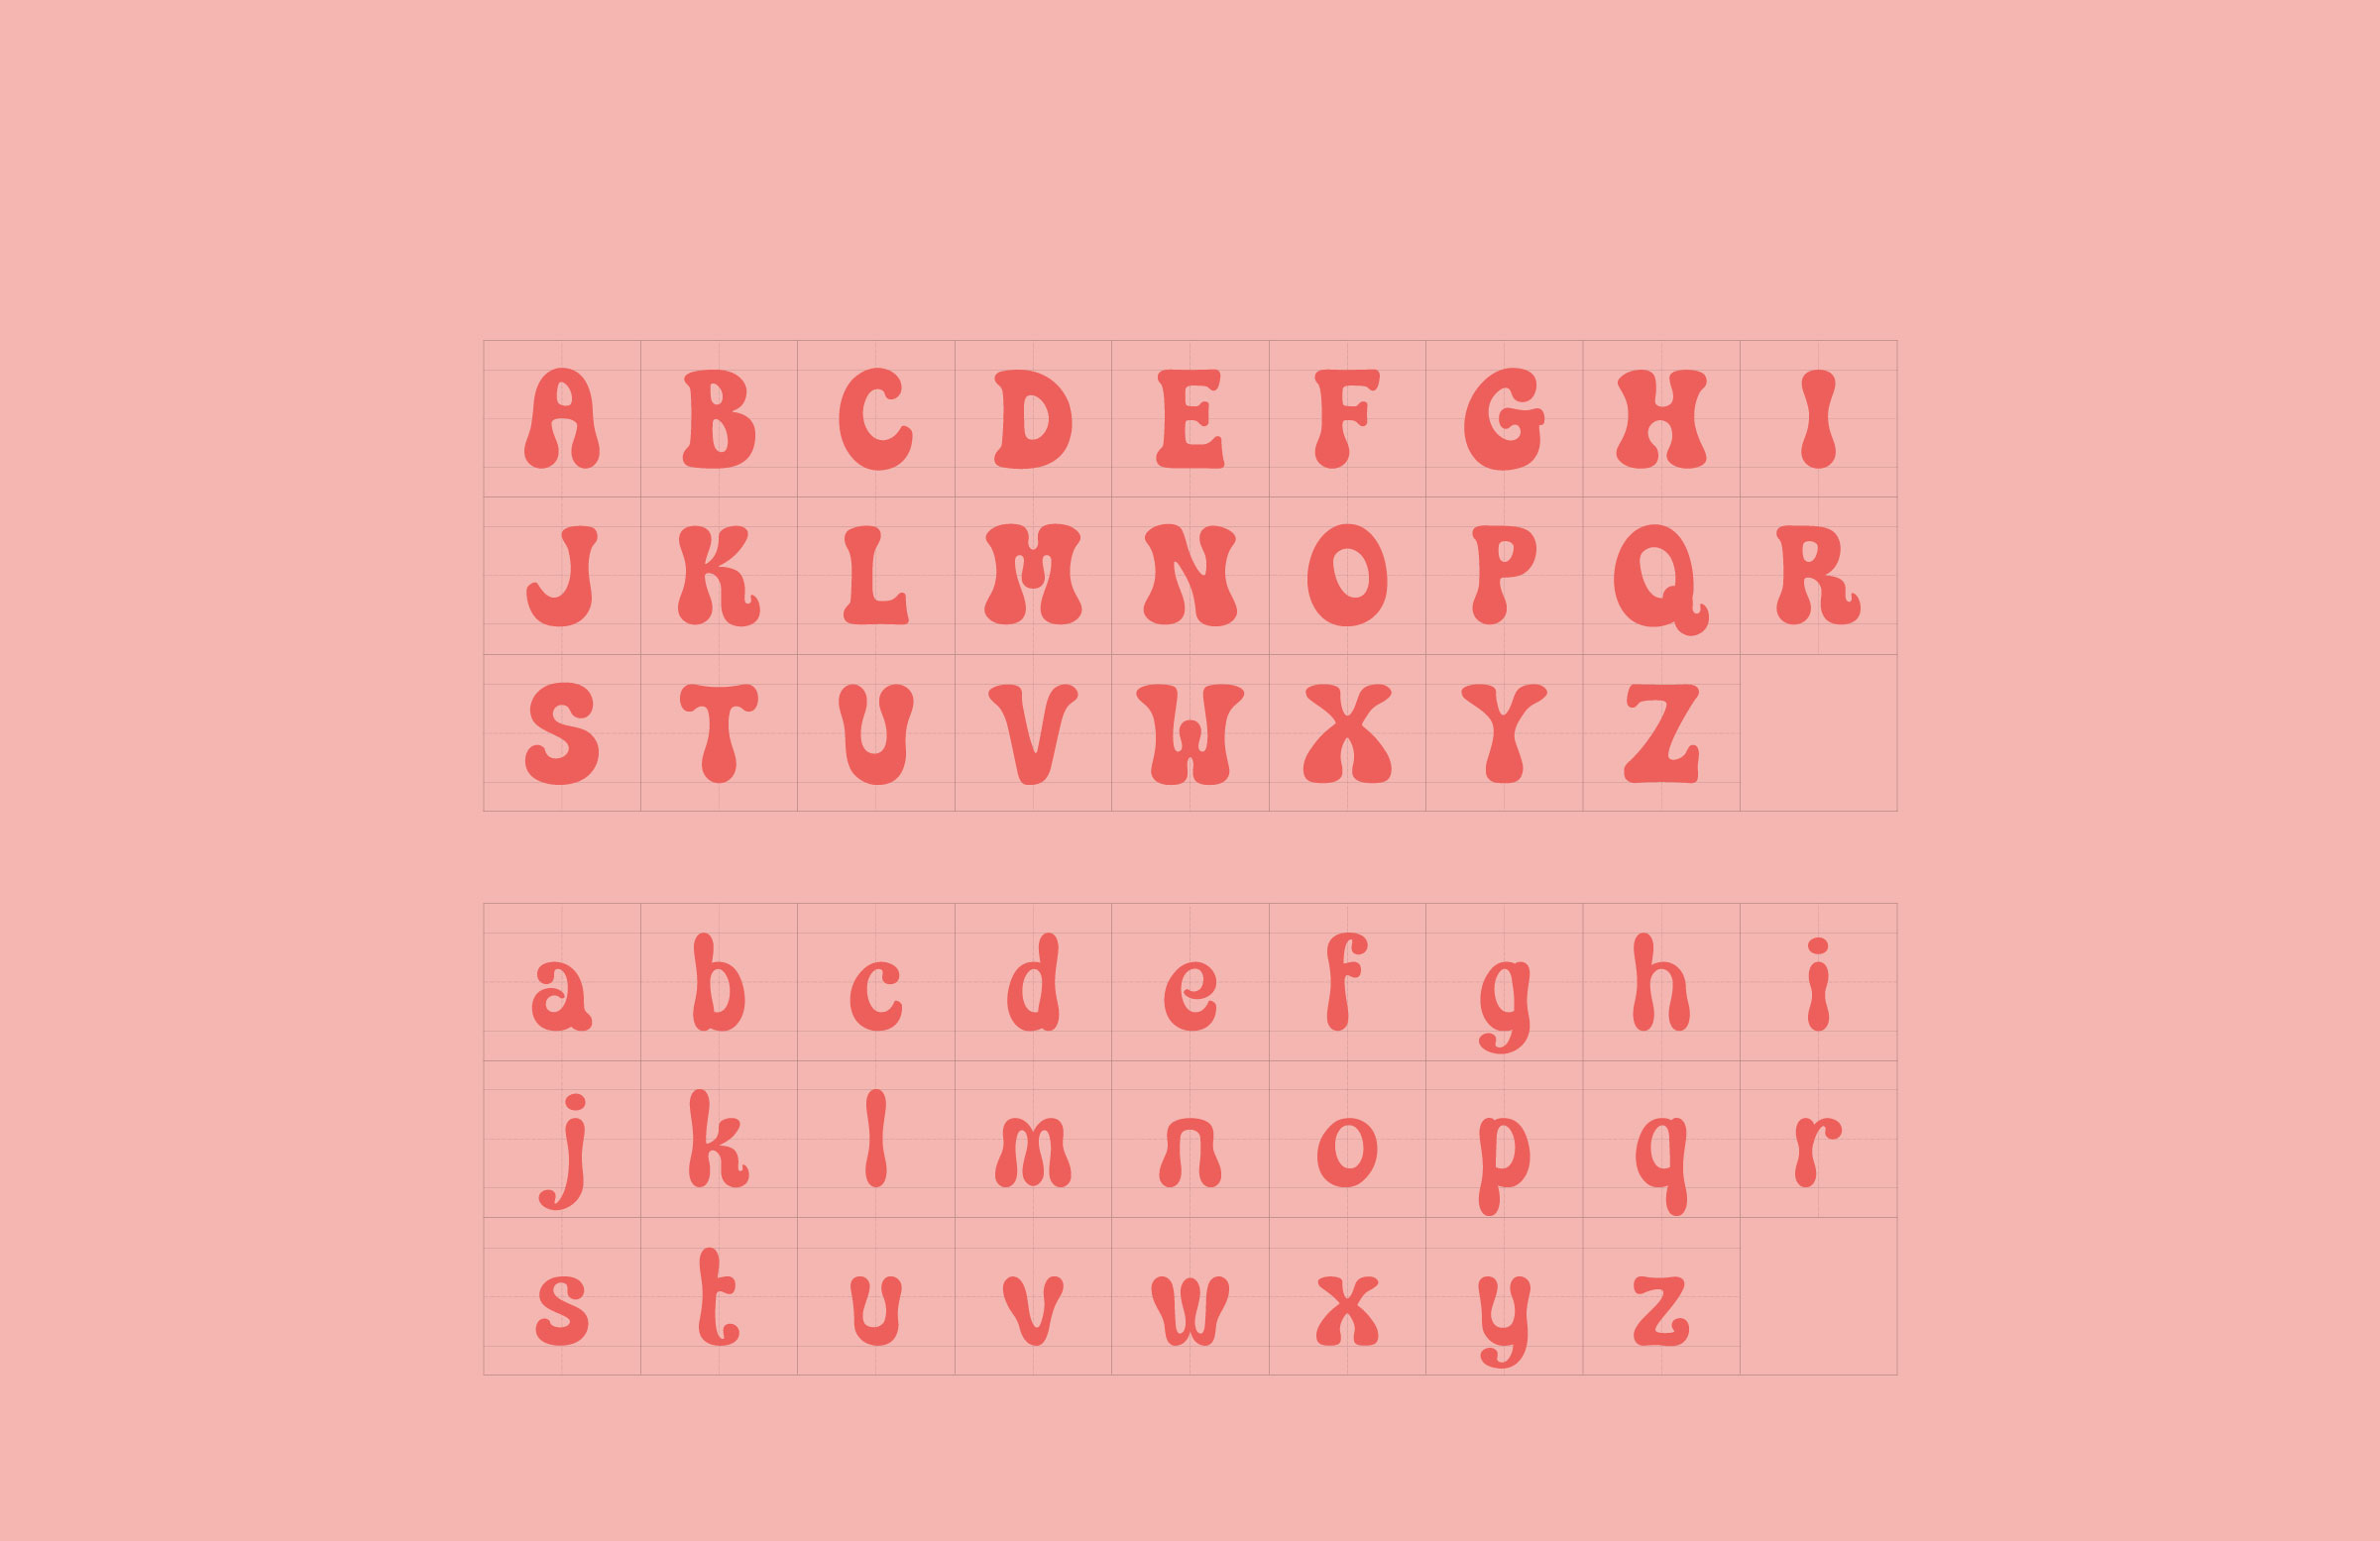 vilavilacola brand typeface design